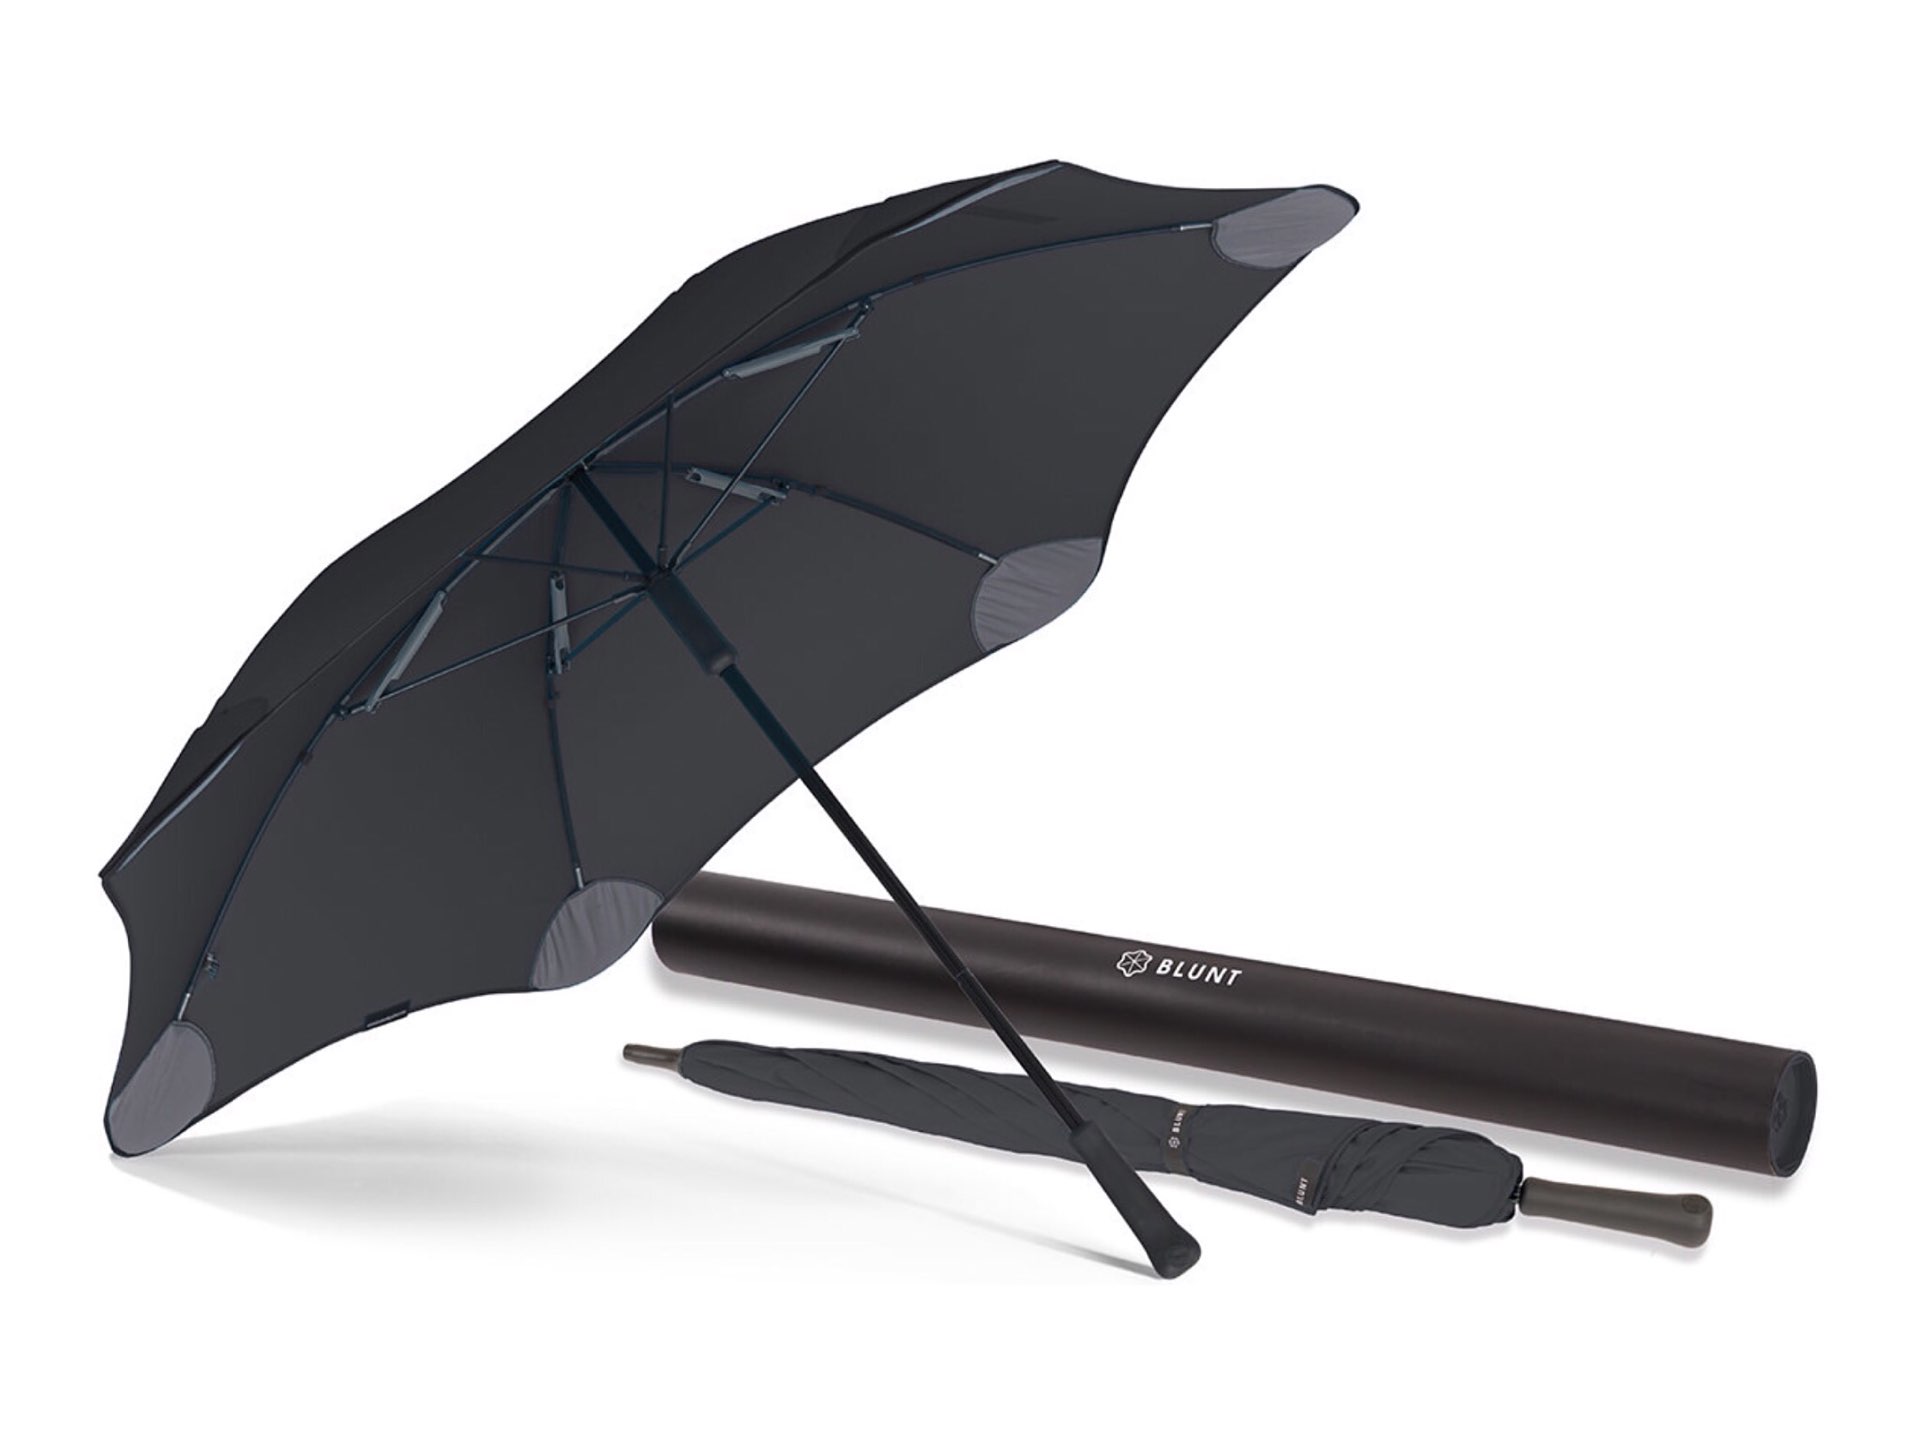 blunt-classic-umbrella